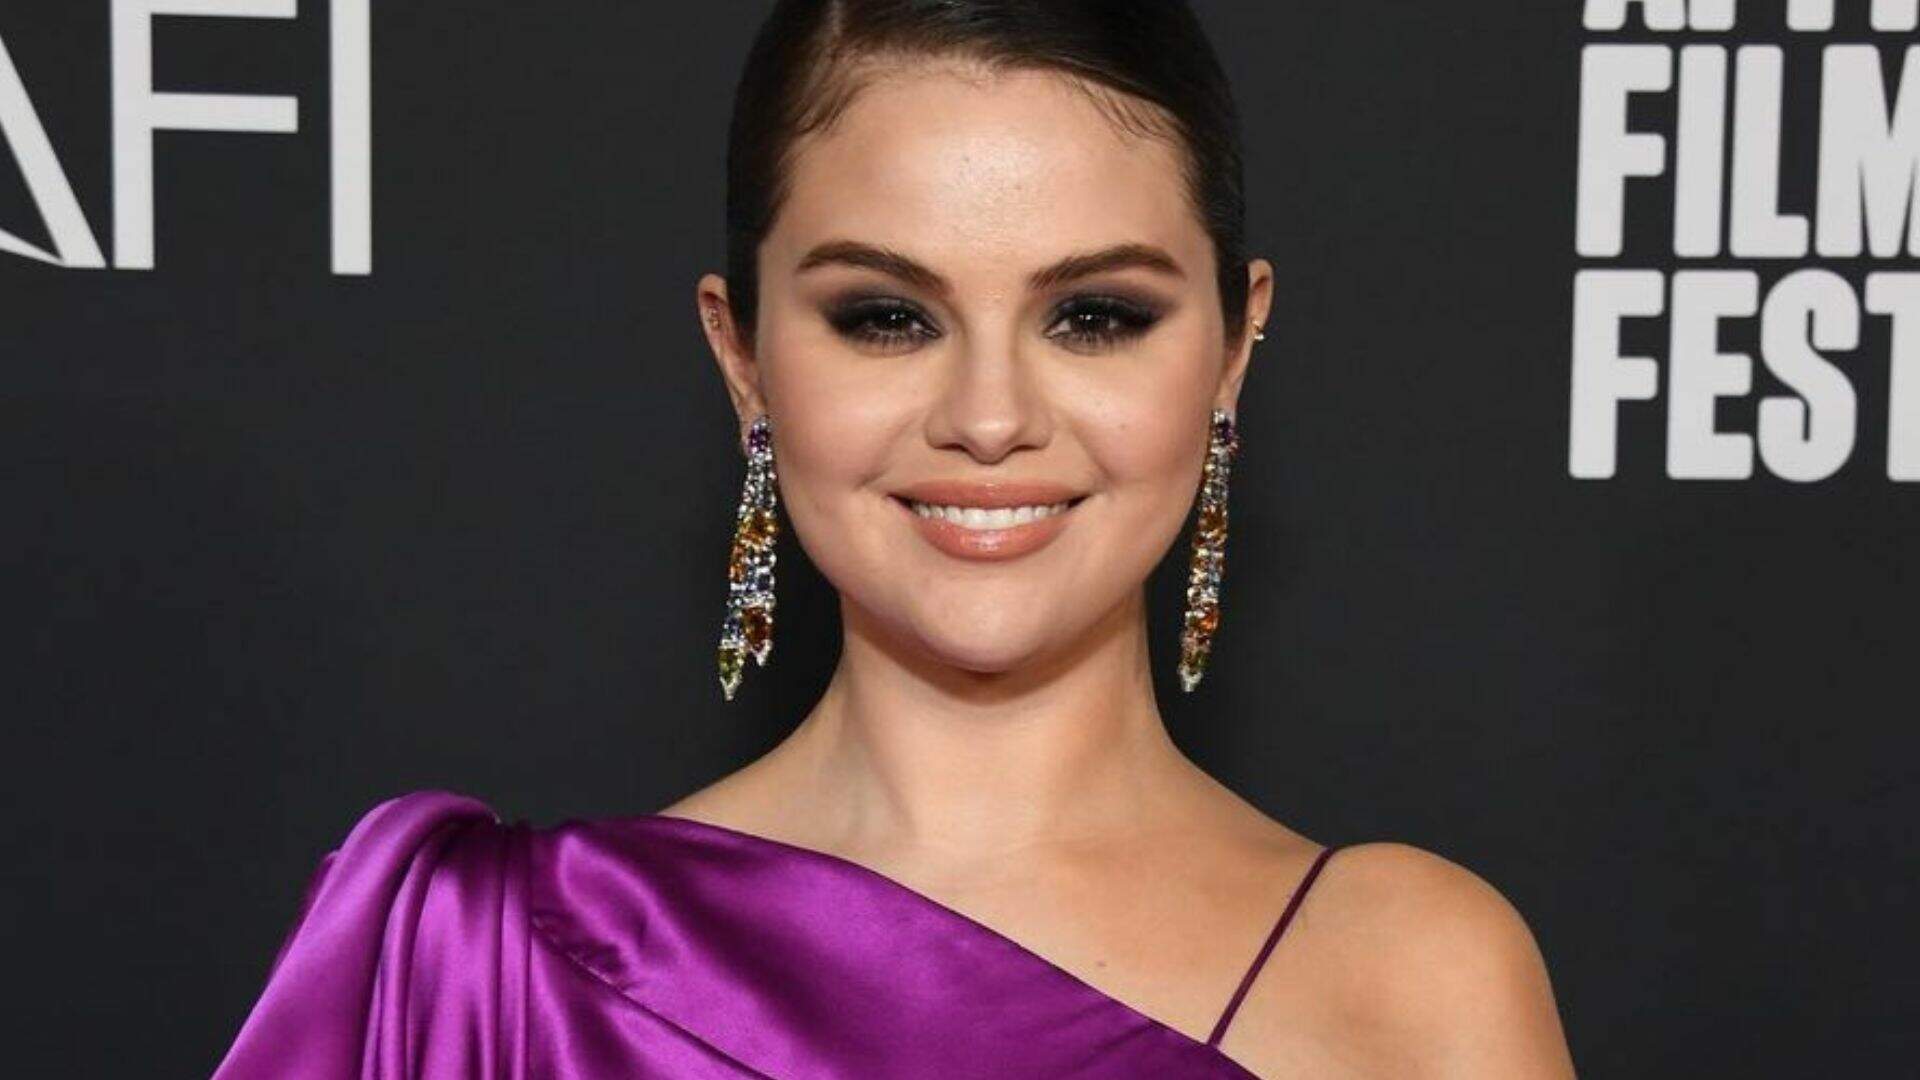 Selena Gomez surge deslumbrante em look roxo na première de seu documentário “My Mind & Me” - Metropolitana FM